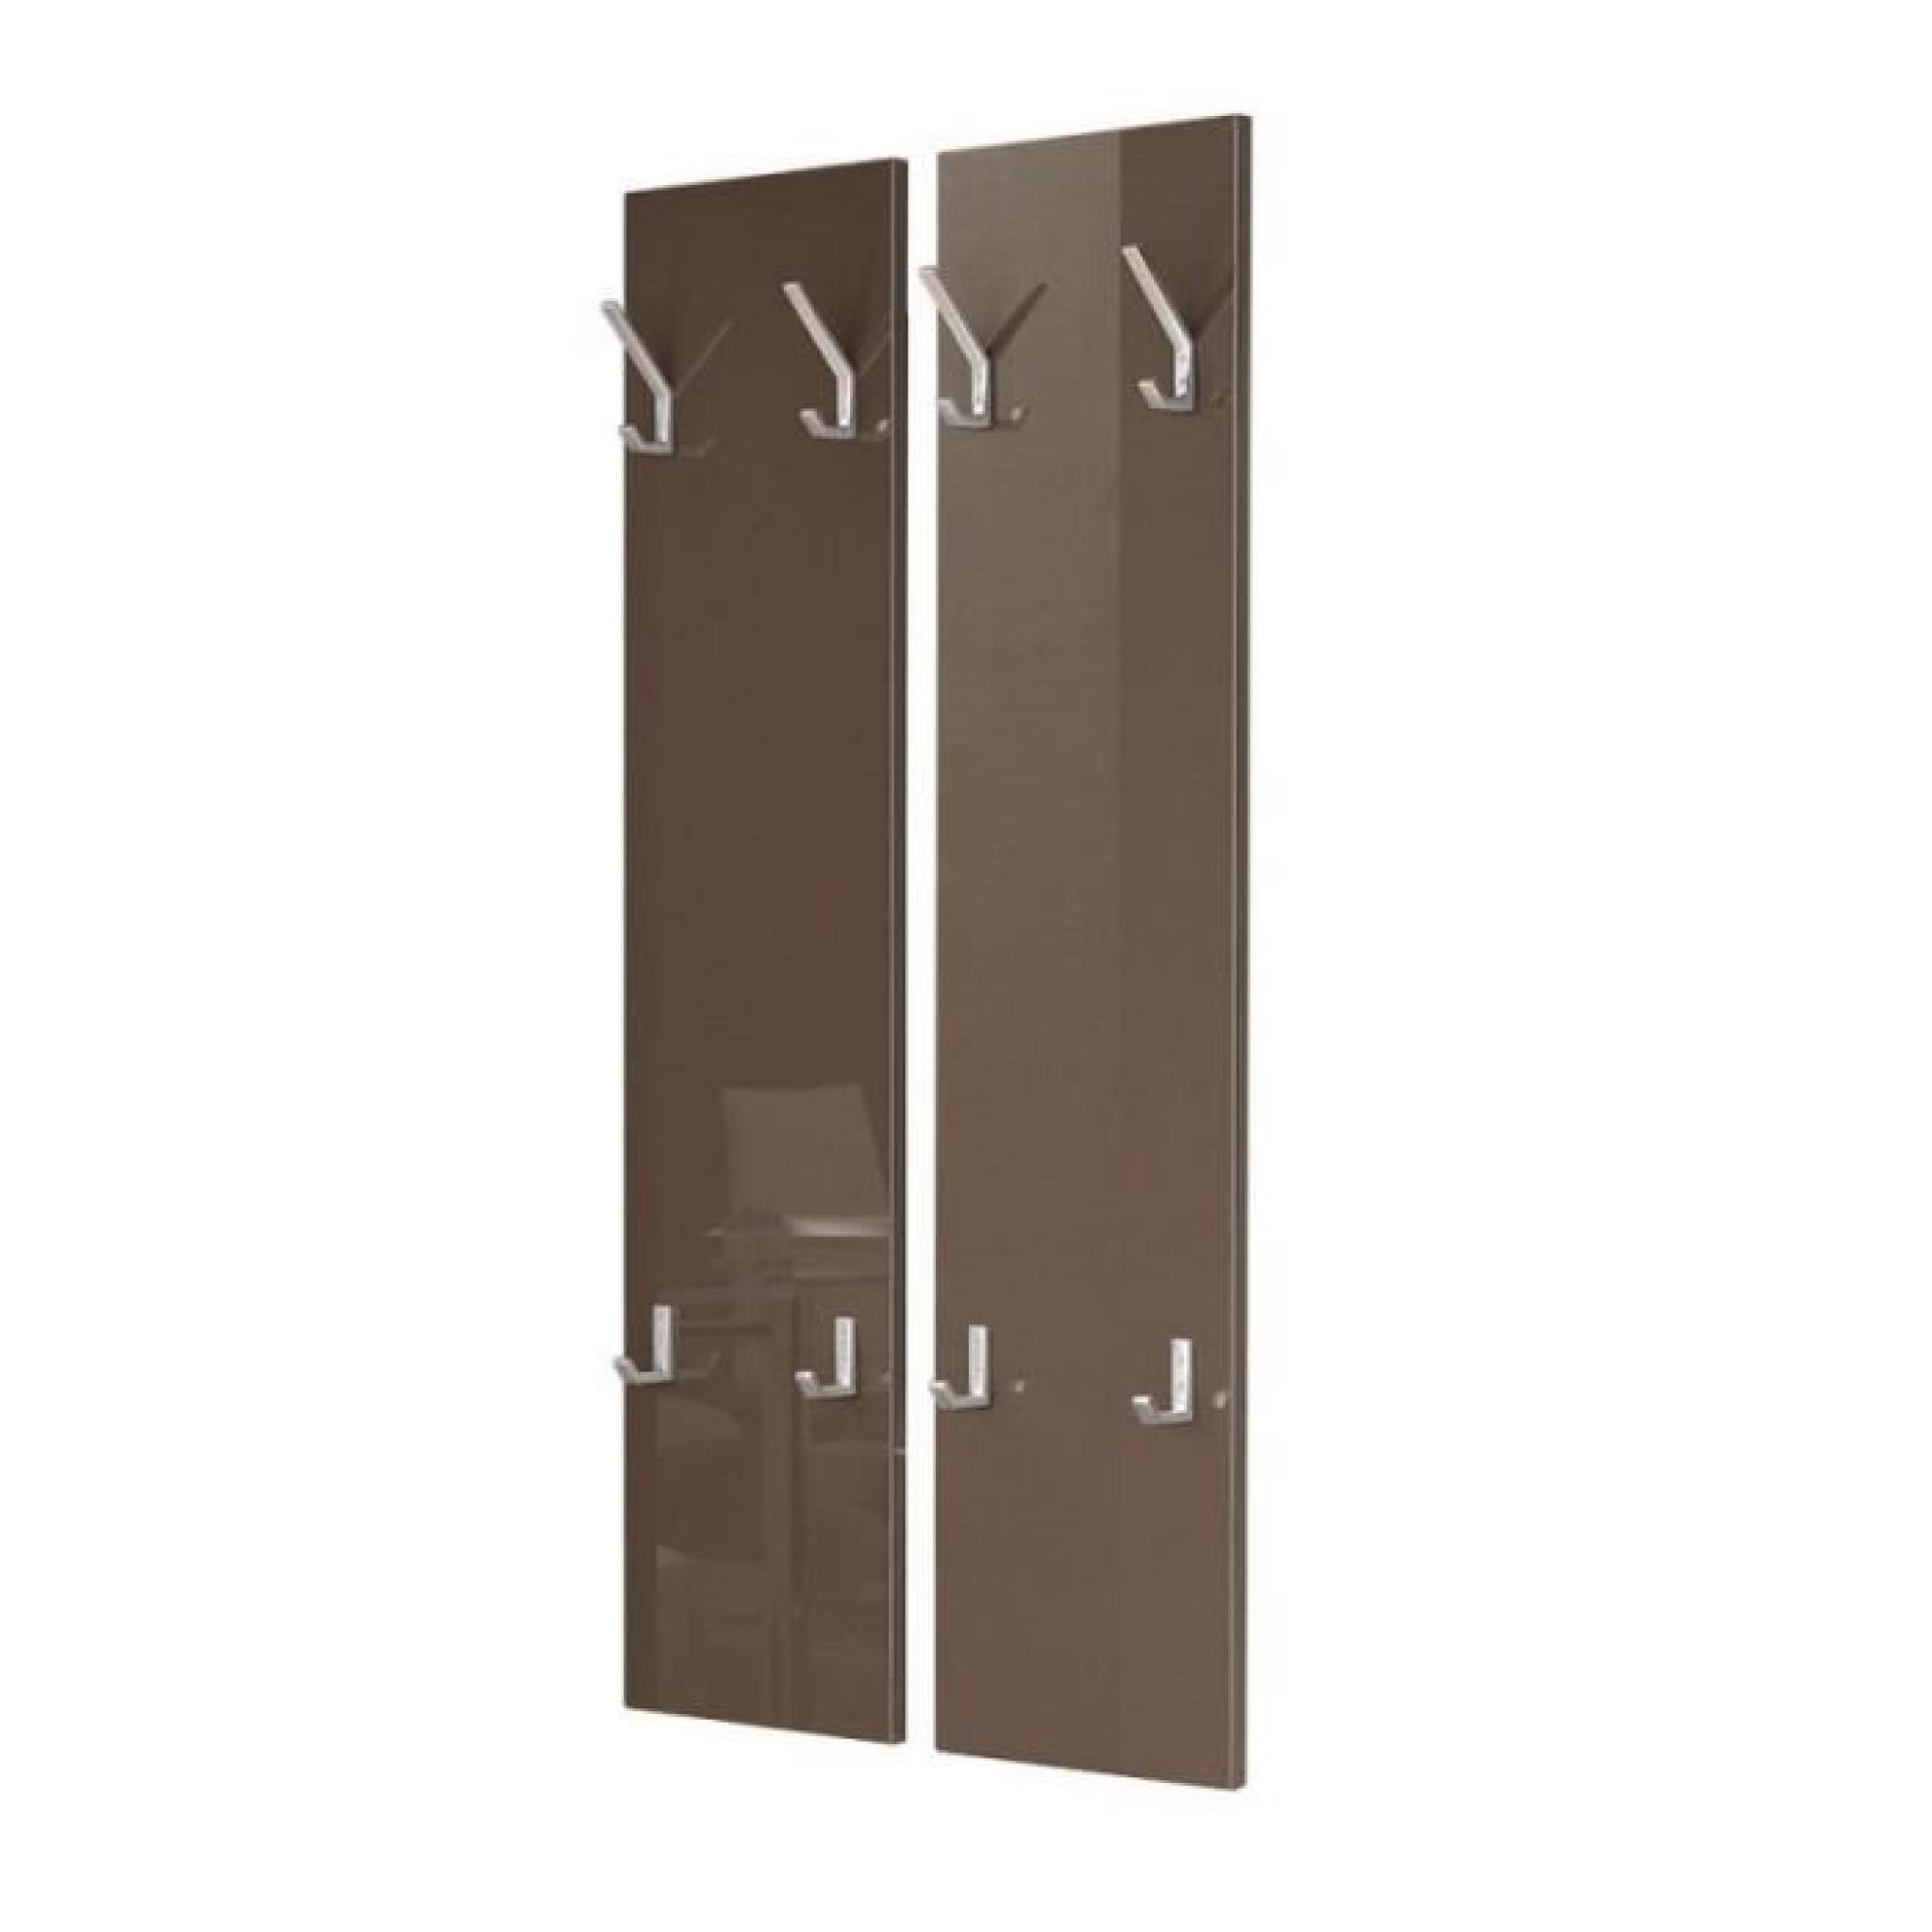 Porte manteaux design 2 panneaux laqués chocolat pas cher